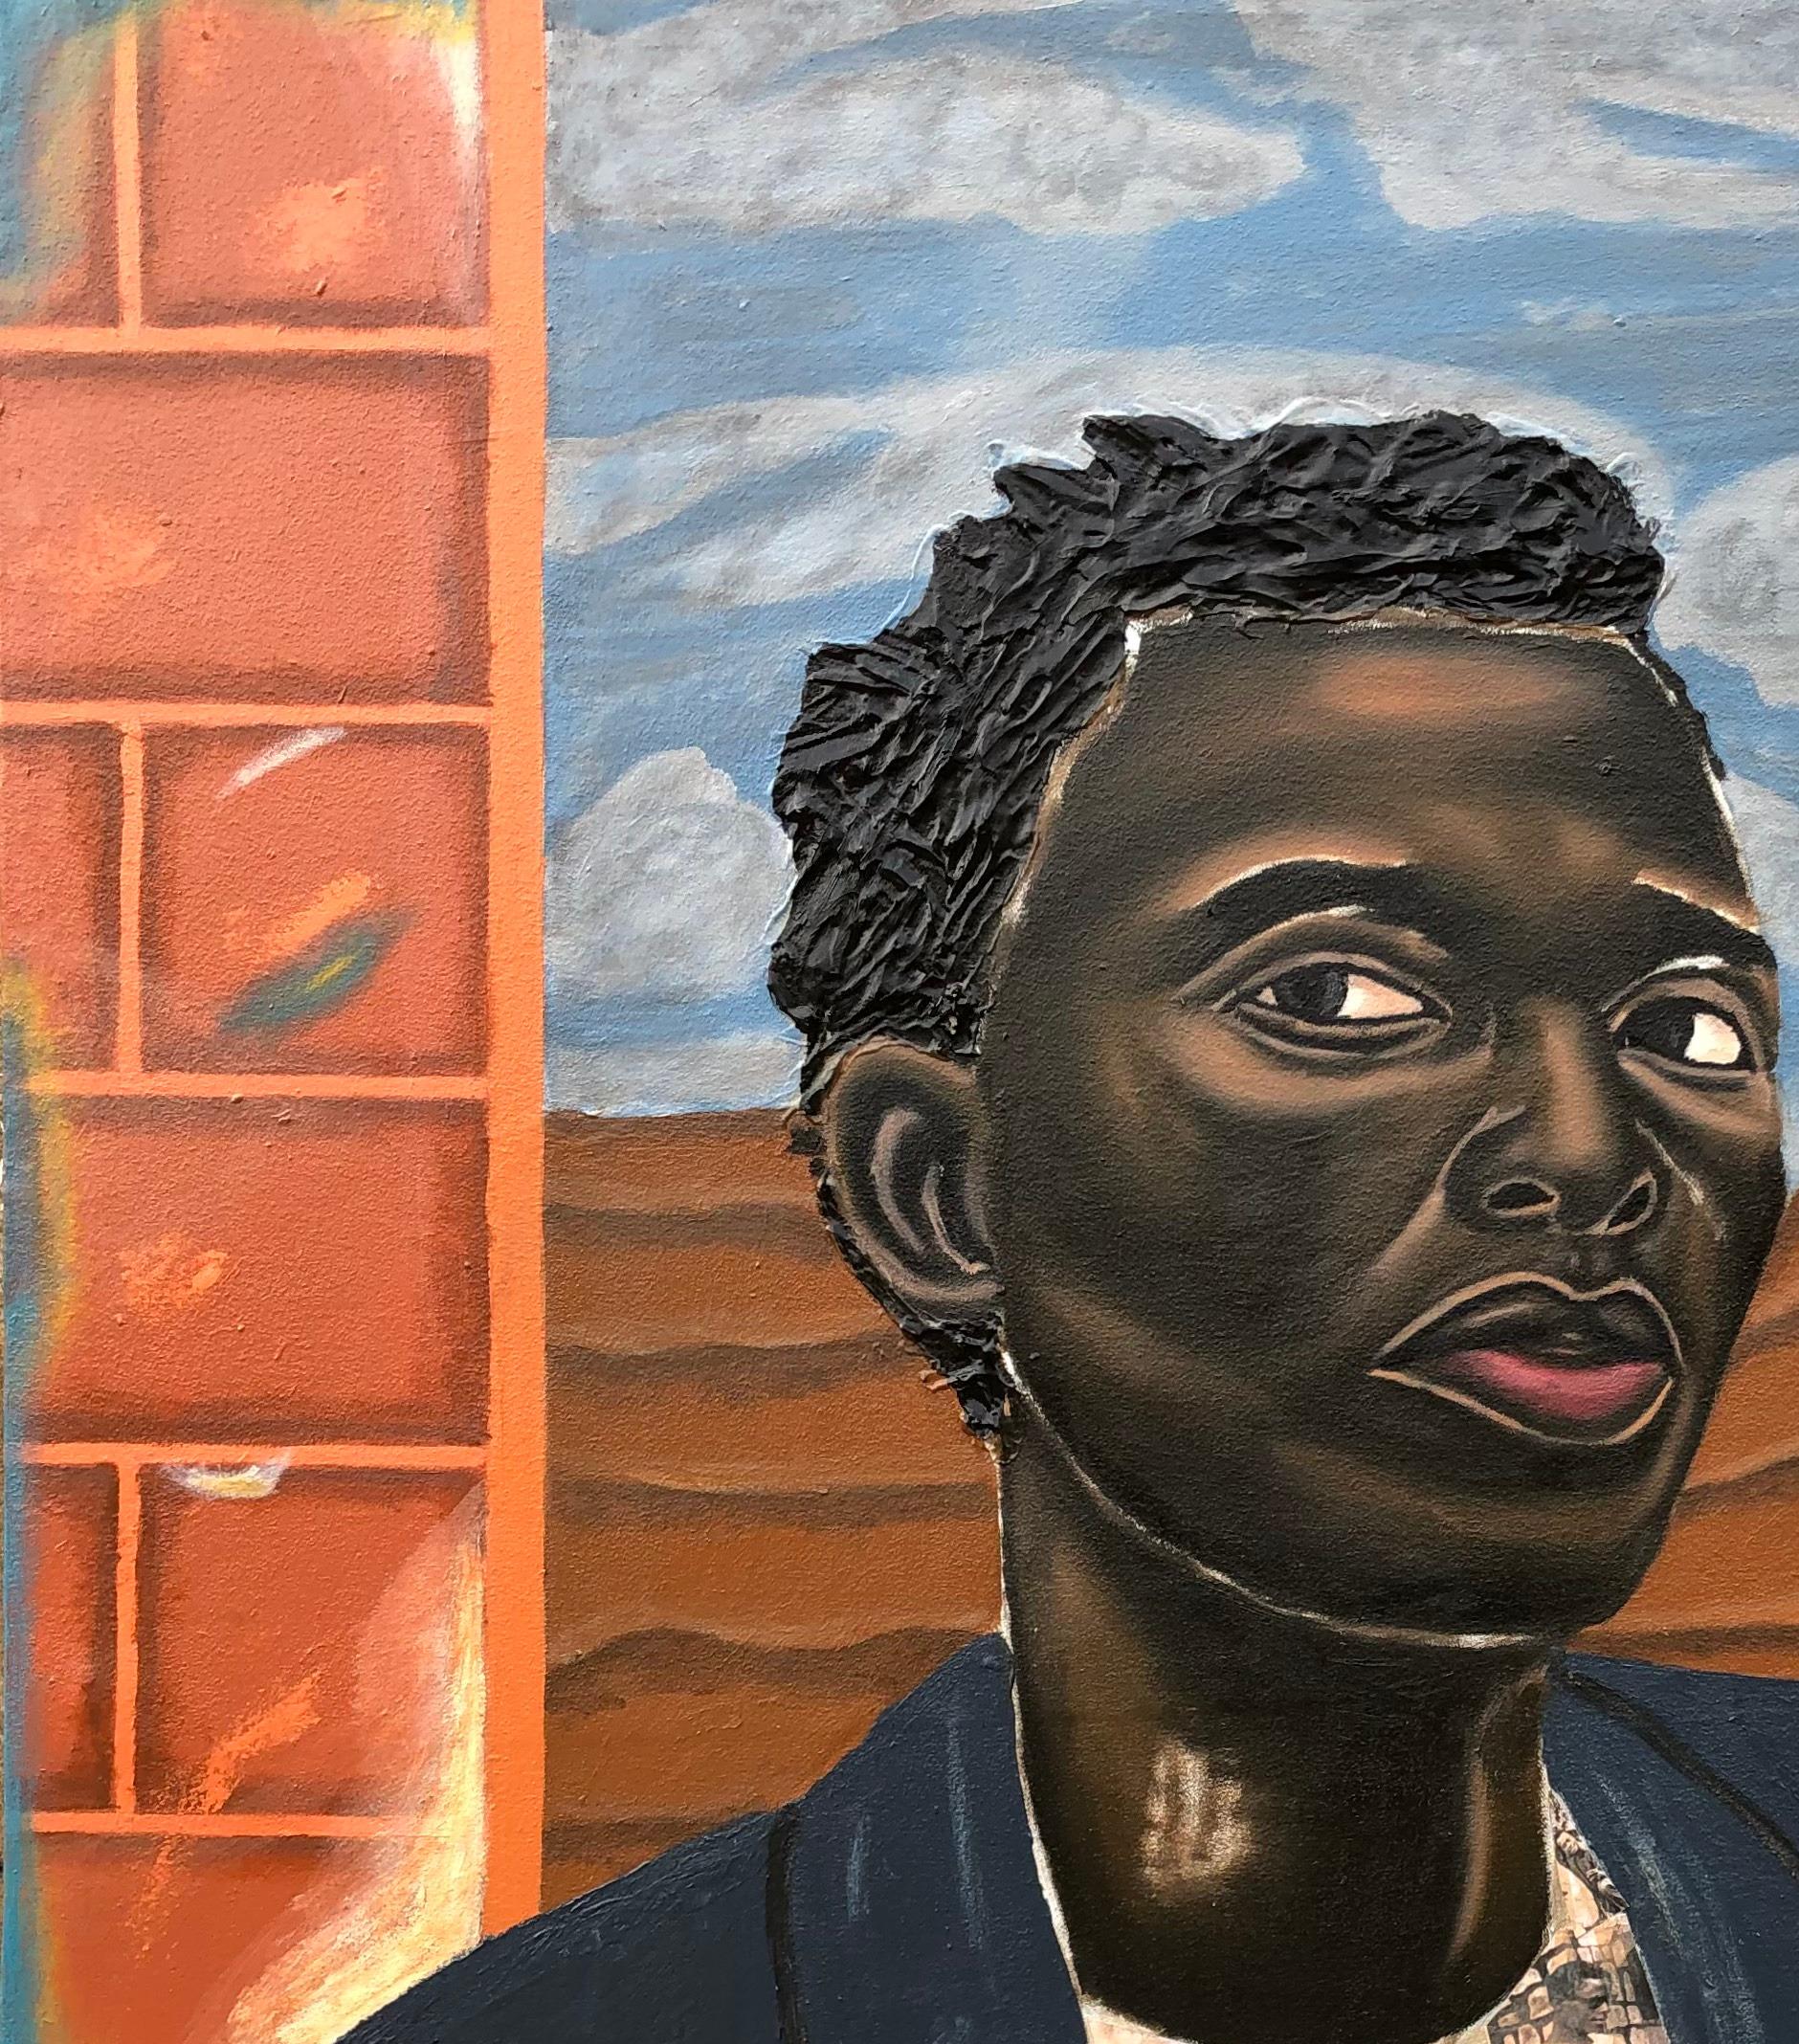 Junge im Wunderland – Painting von Samson Olatubosun